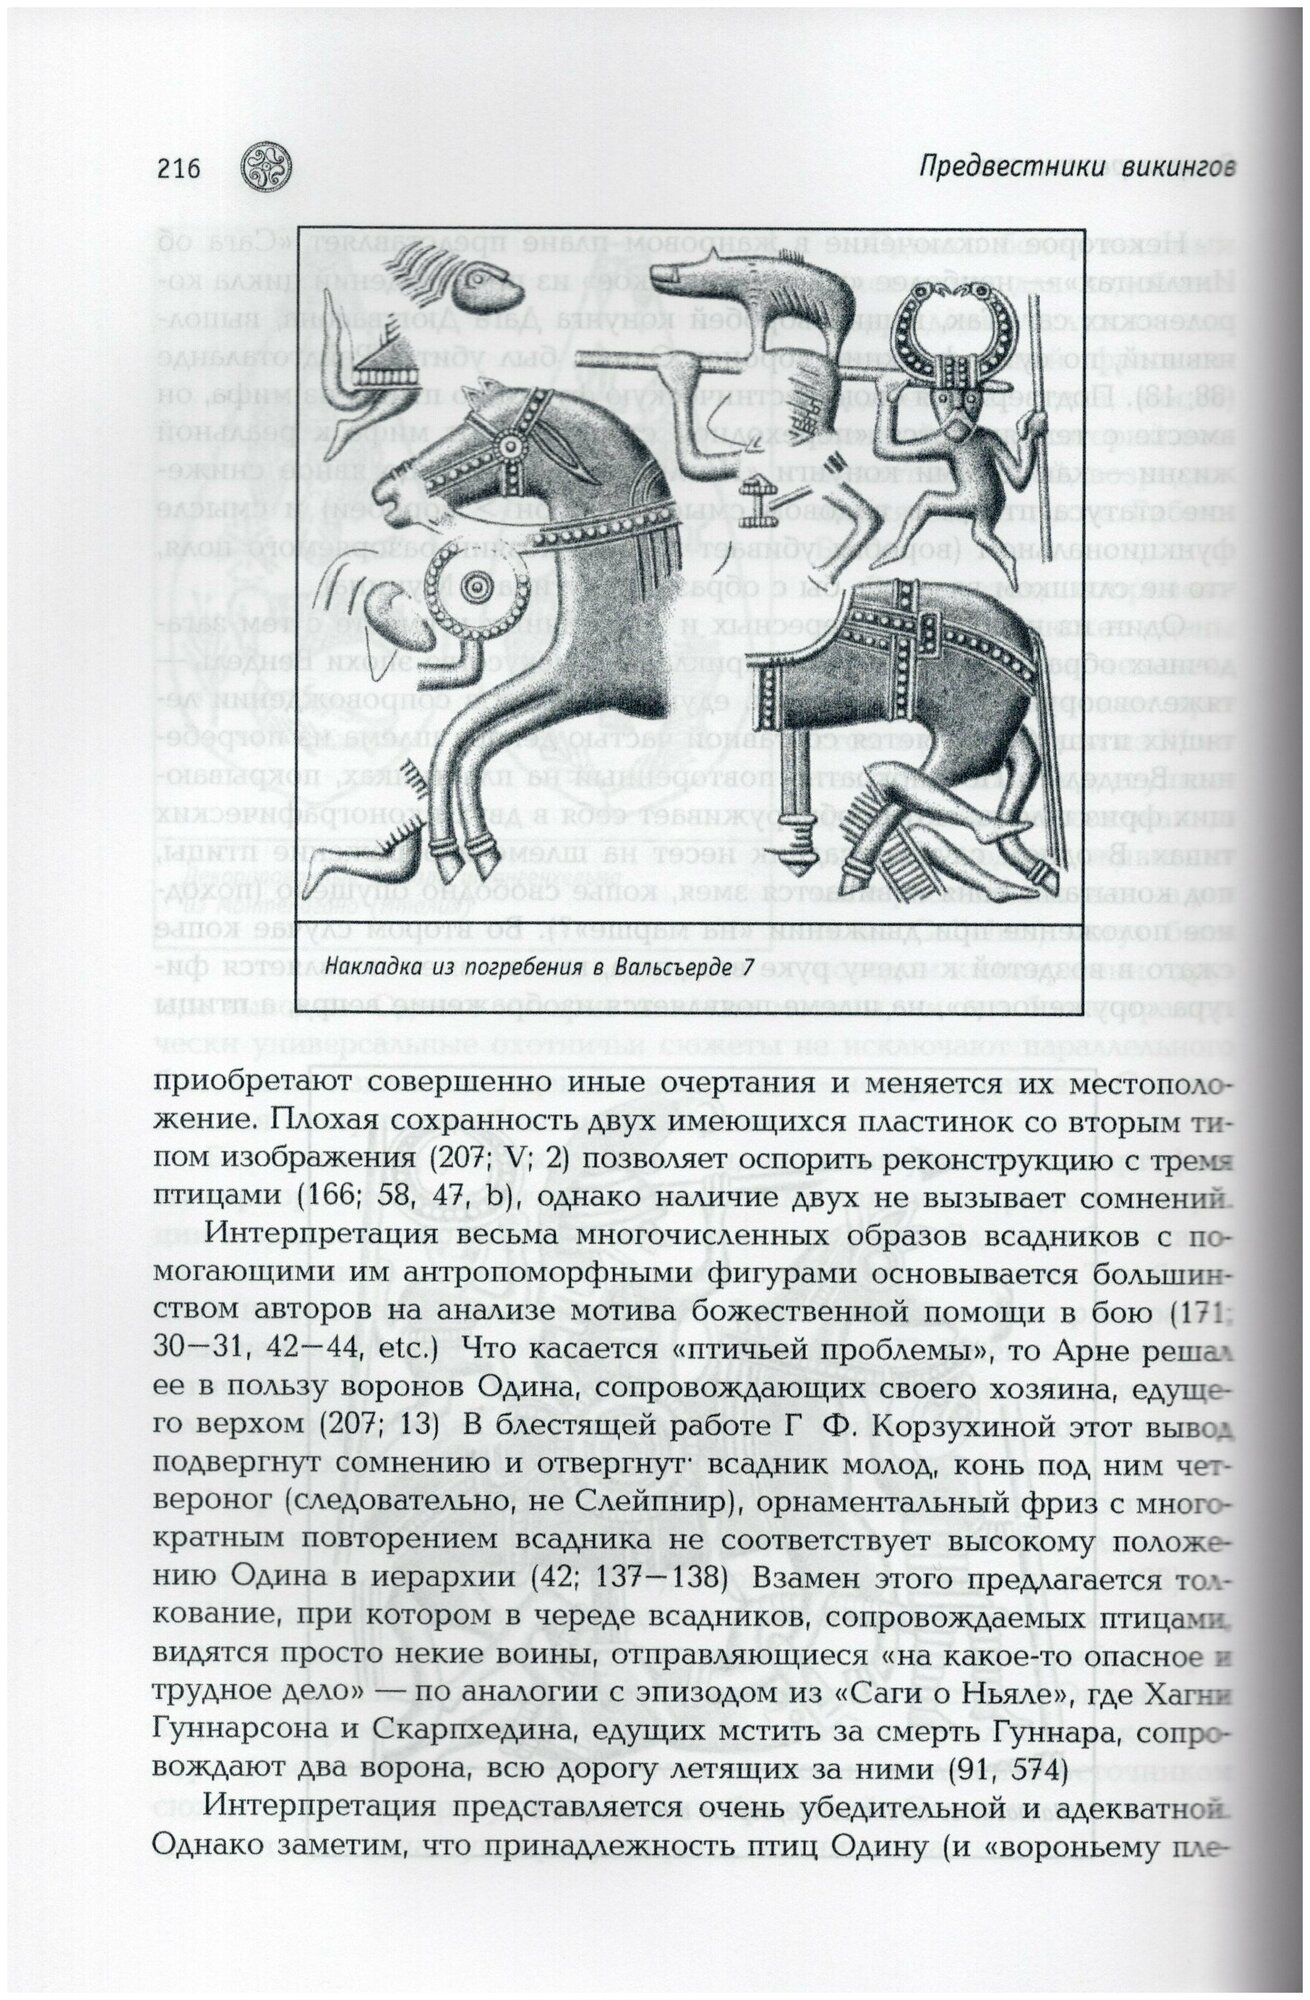 Предвестники викингов. Северная Европа в I-VIII веках - фото №4